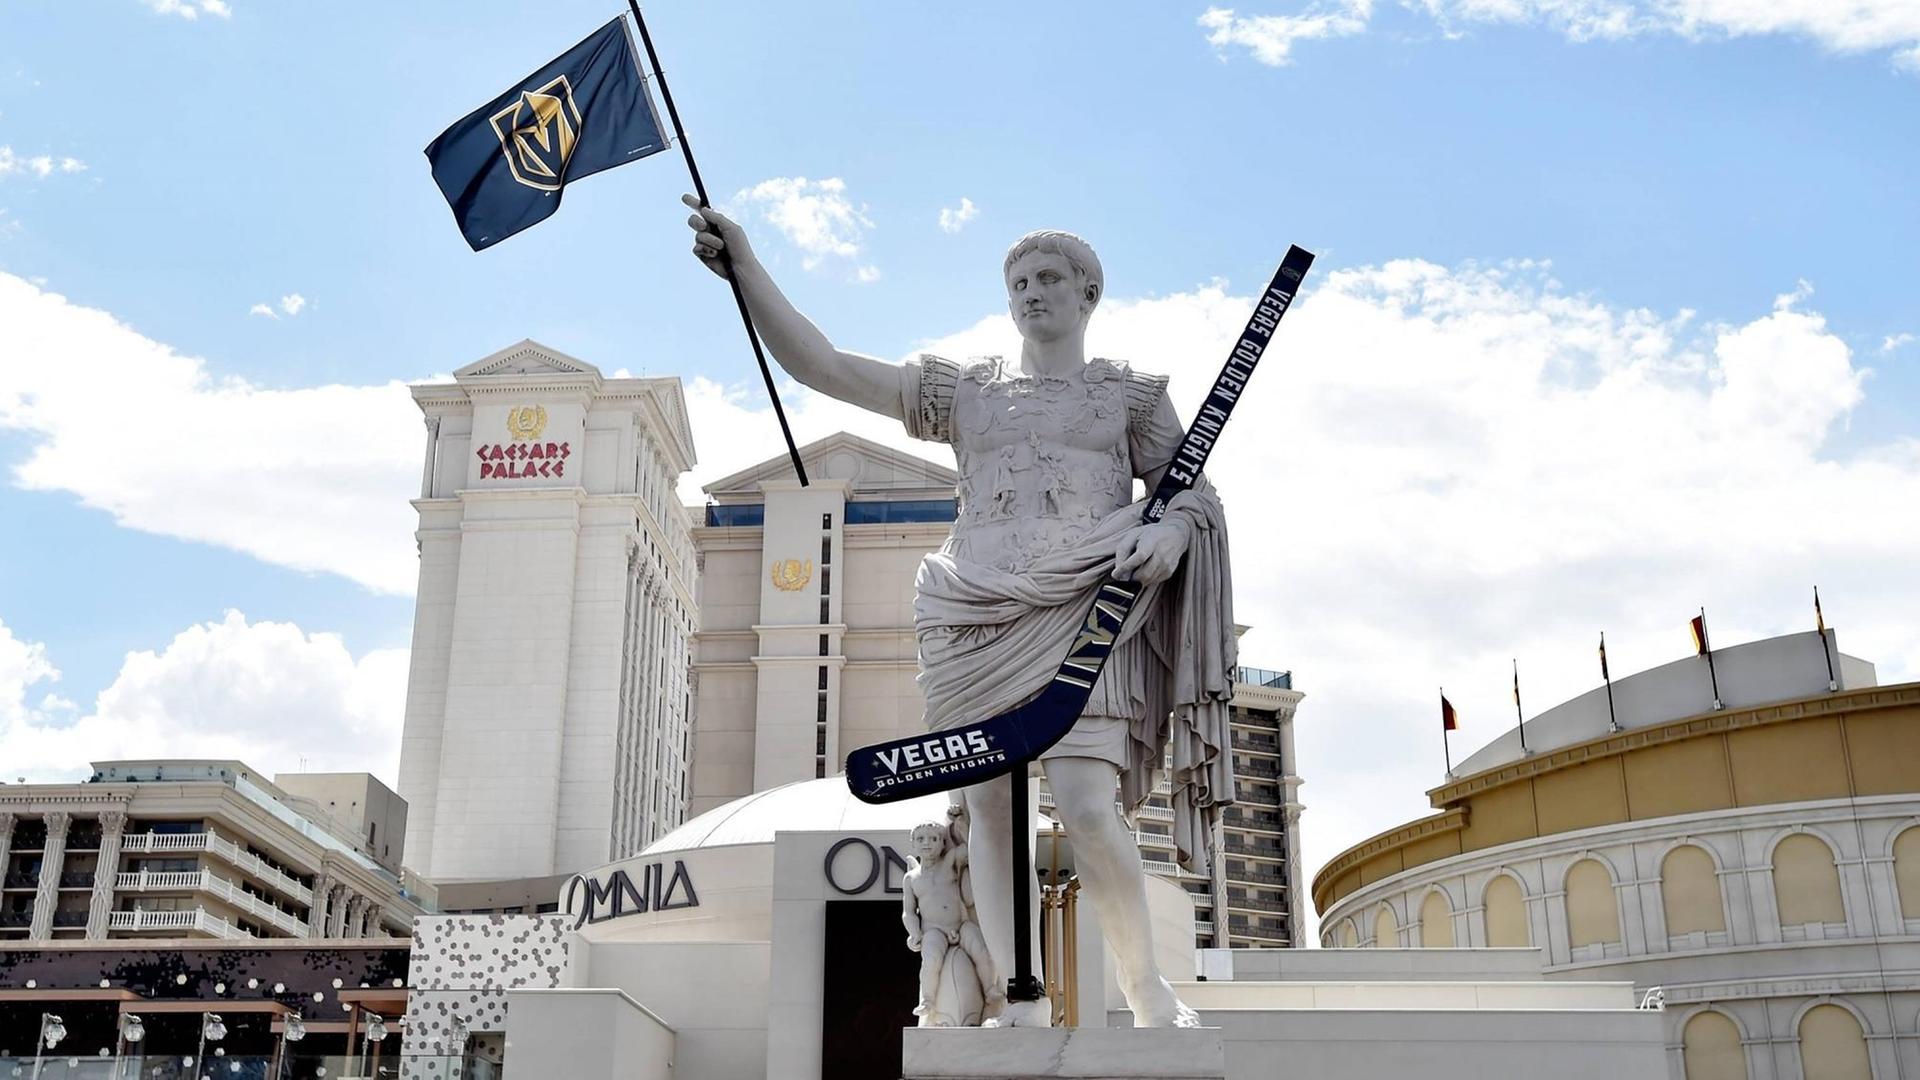 Die ganze Stadt fiebert mit: Vor dem berühmten Kasino Caesar's Palace hält die Cäsar-Statue einen Eishockey-Schläger und eine Fahne der Las Vegas Golden Knights